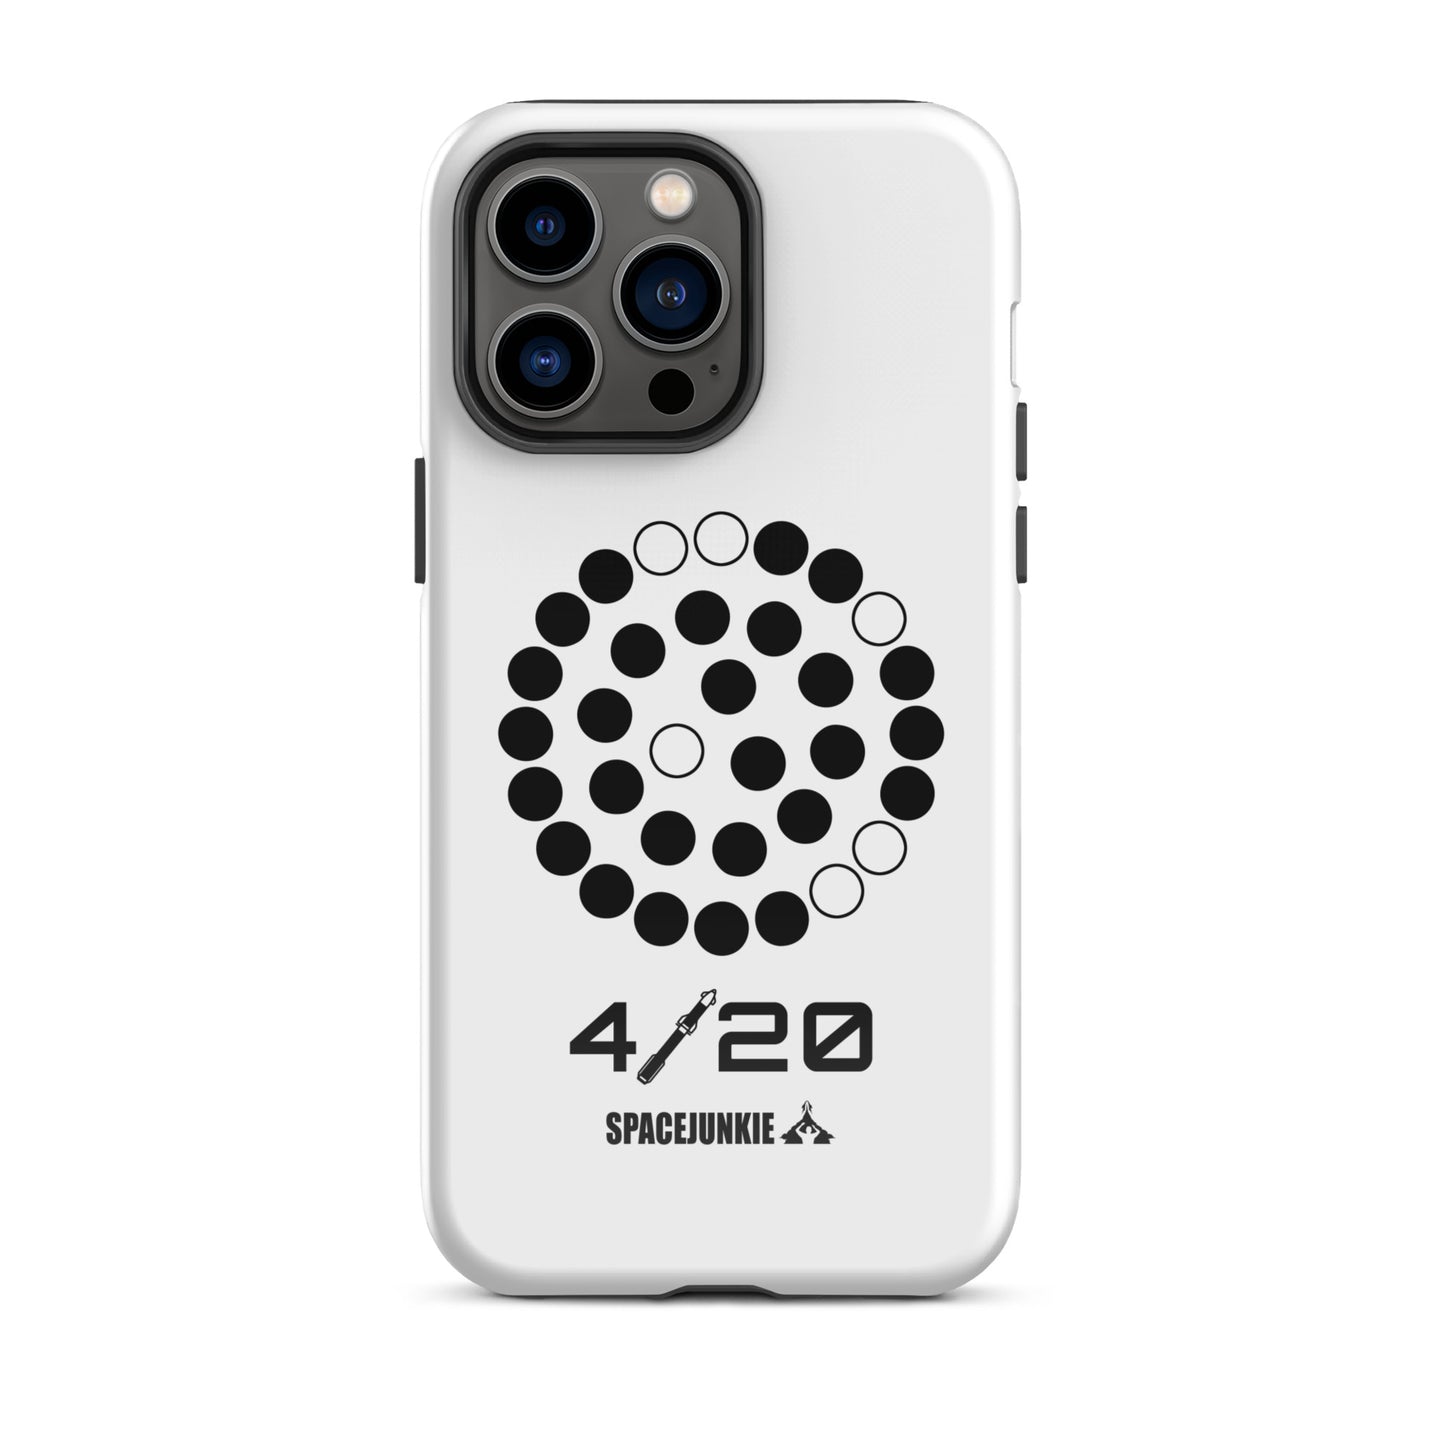 Starship 4/20 hátlap - iPhone® 11, 11 Pro, 11 Pro Max, 12, 12 Mini, 12 Pro, 12 Pro Max, 13, 13 Mini, 13 Pro, 13 Pro Max, 14, 14 Mini, 14 Pro, 14 Pro Max